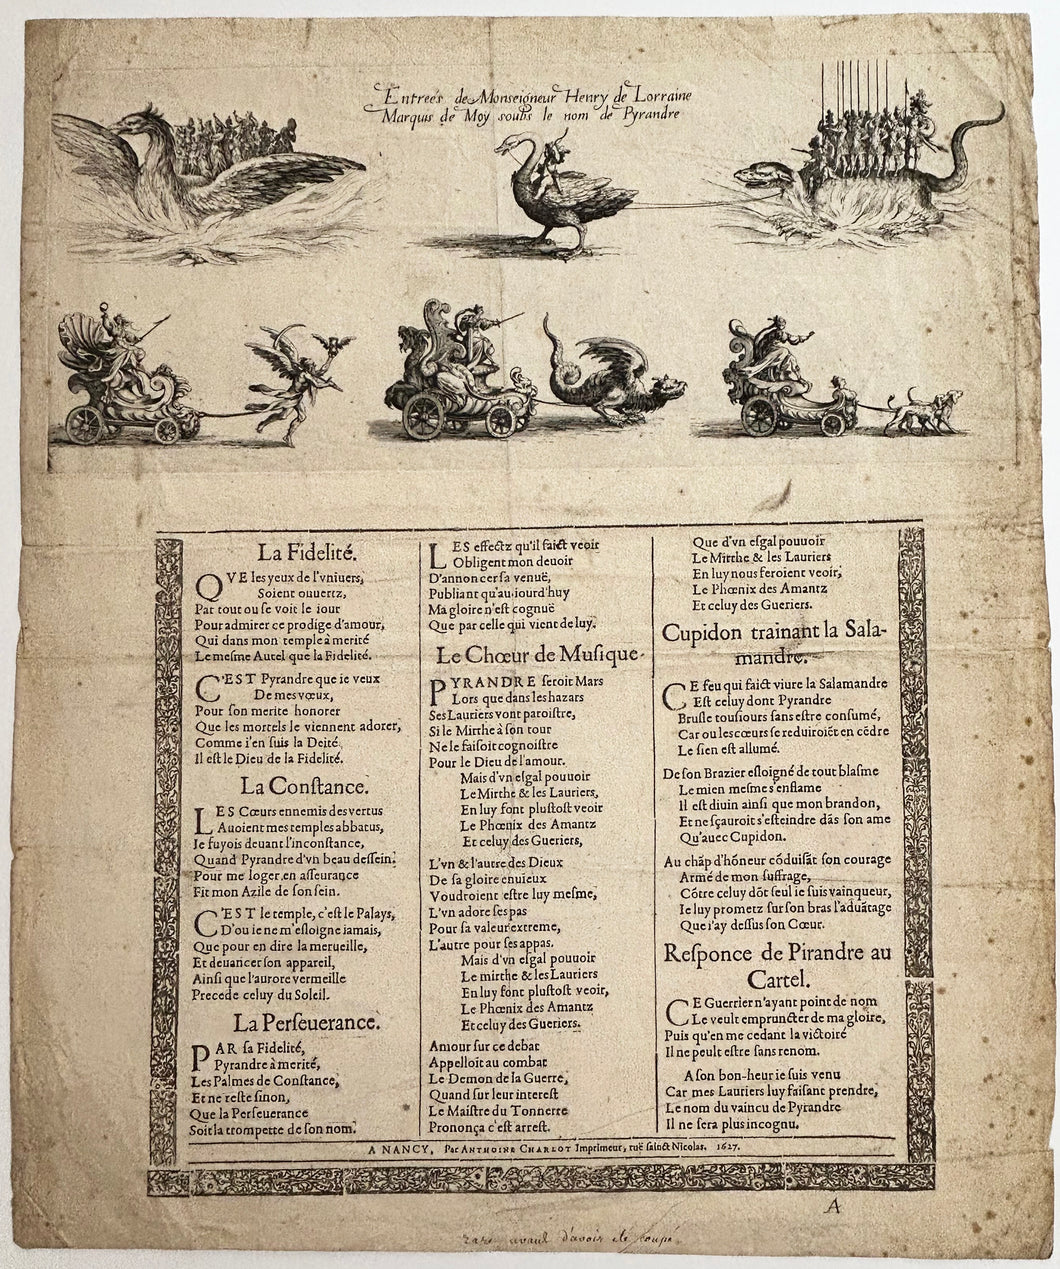 Entrée de Monseigneur Henry de Lorraine. Placard publicitaire.  1627.